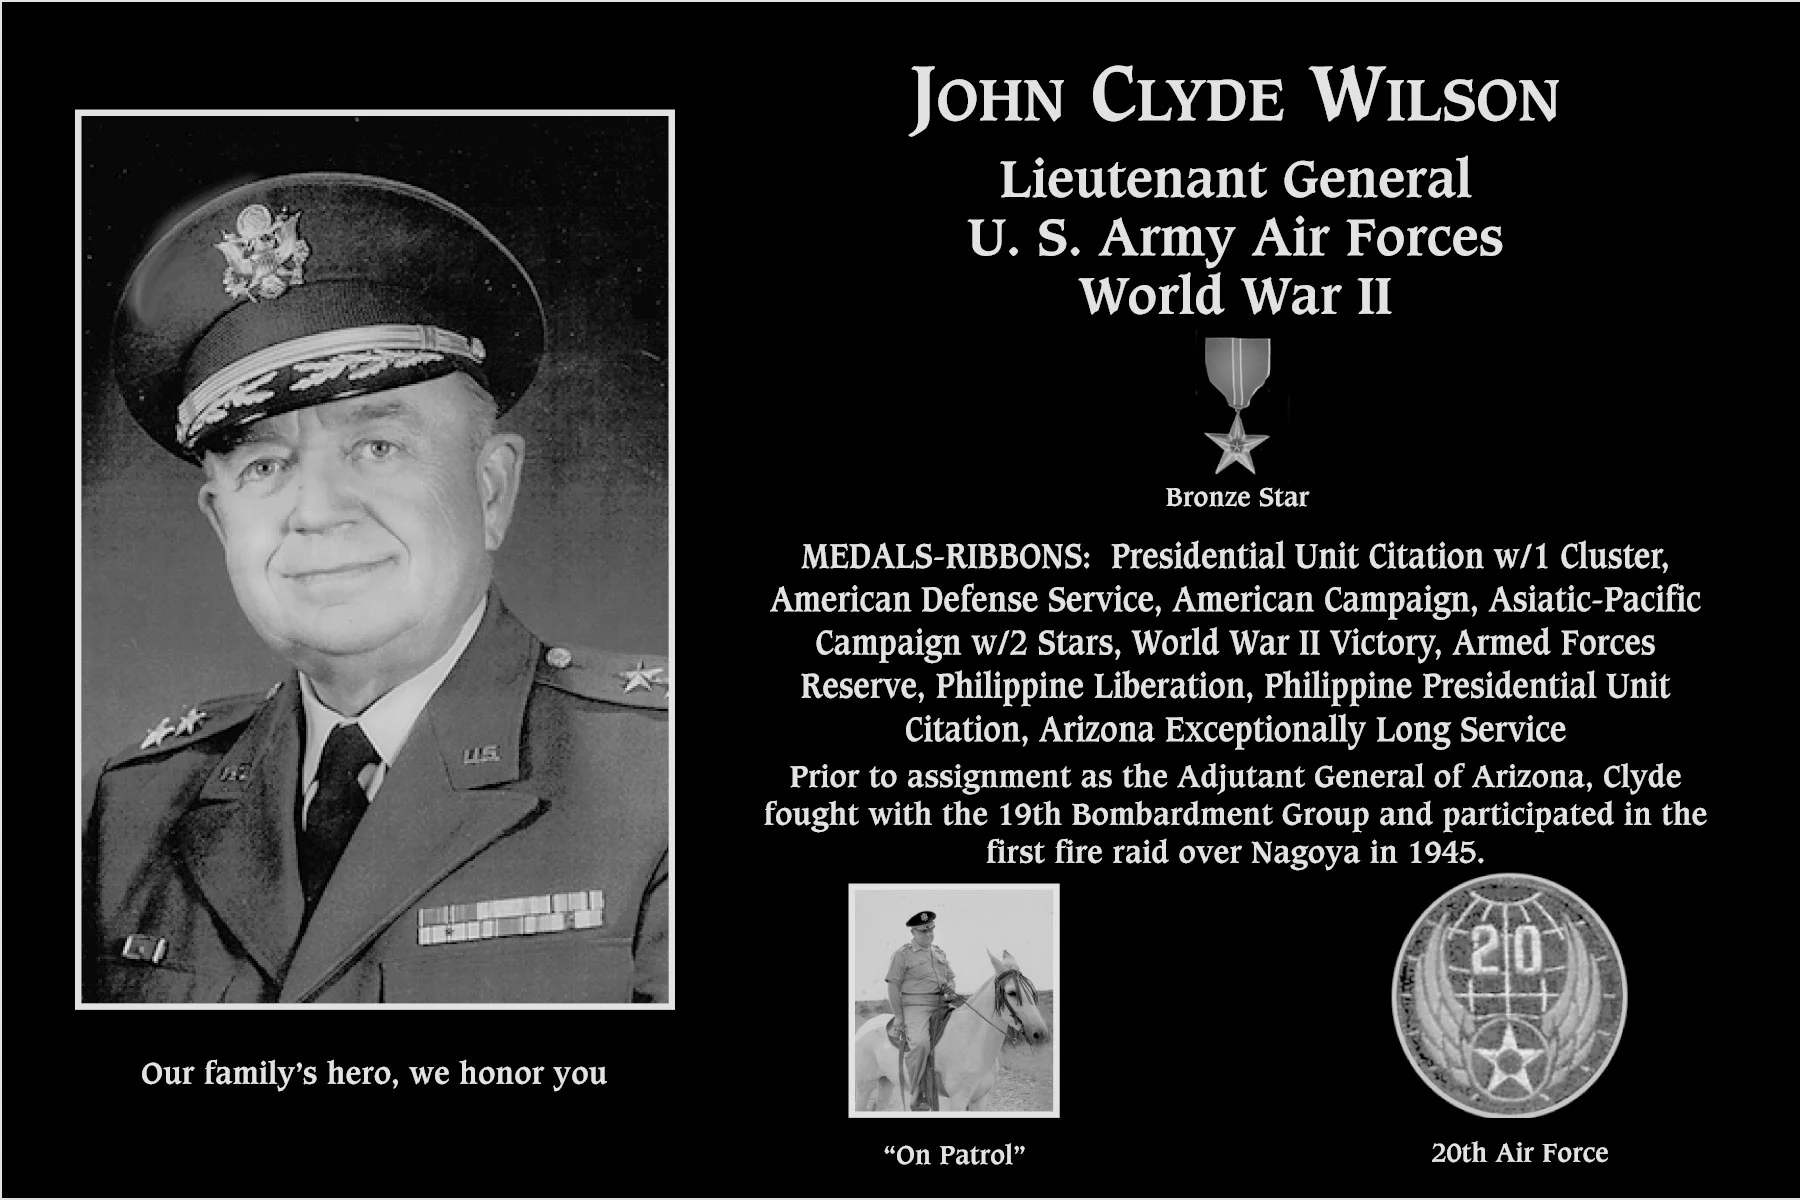 John Clyde Wilson